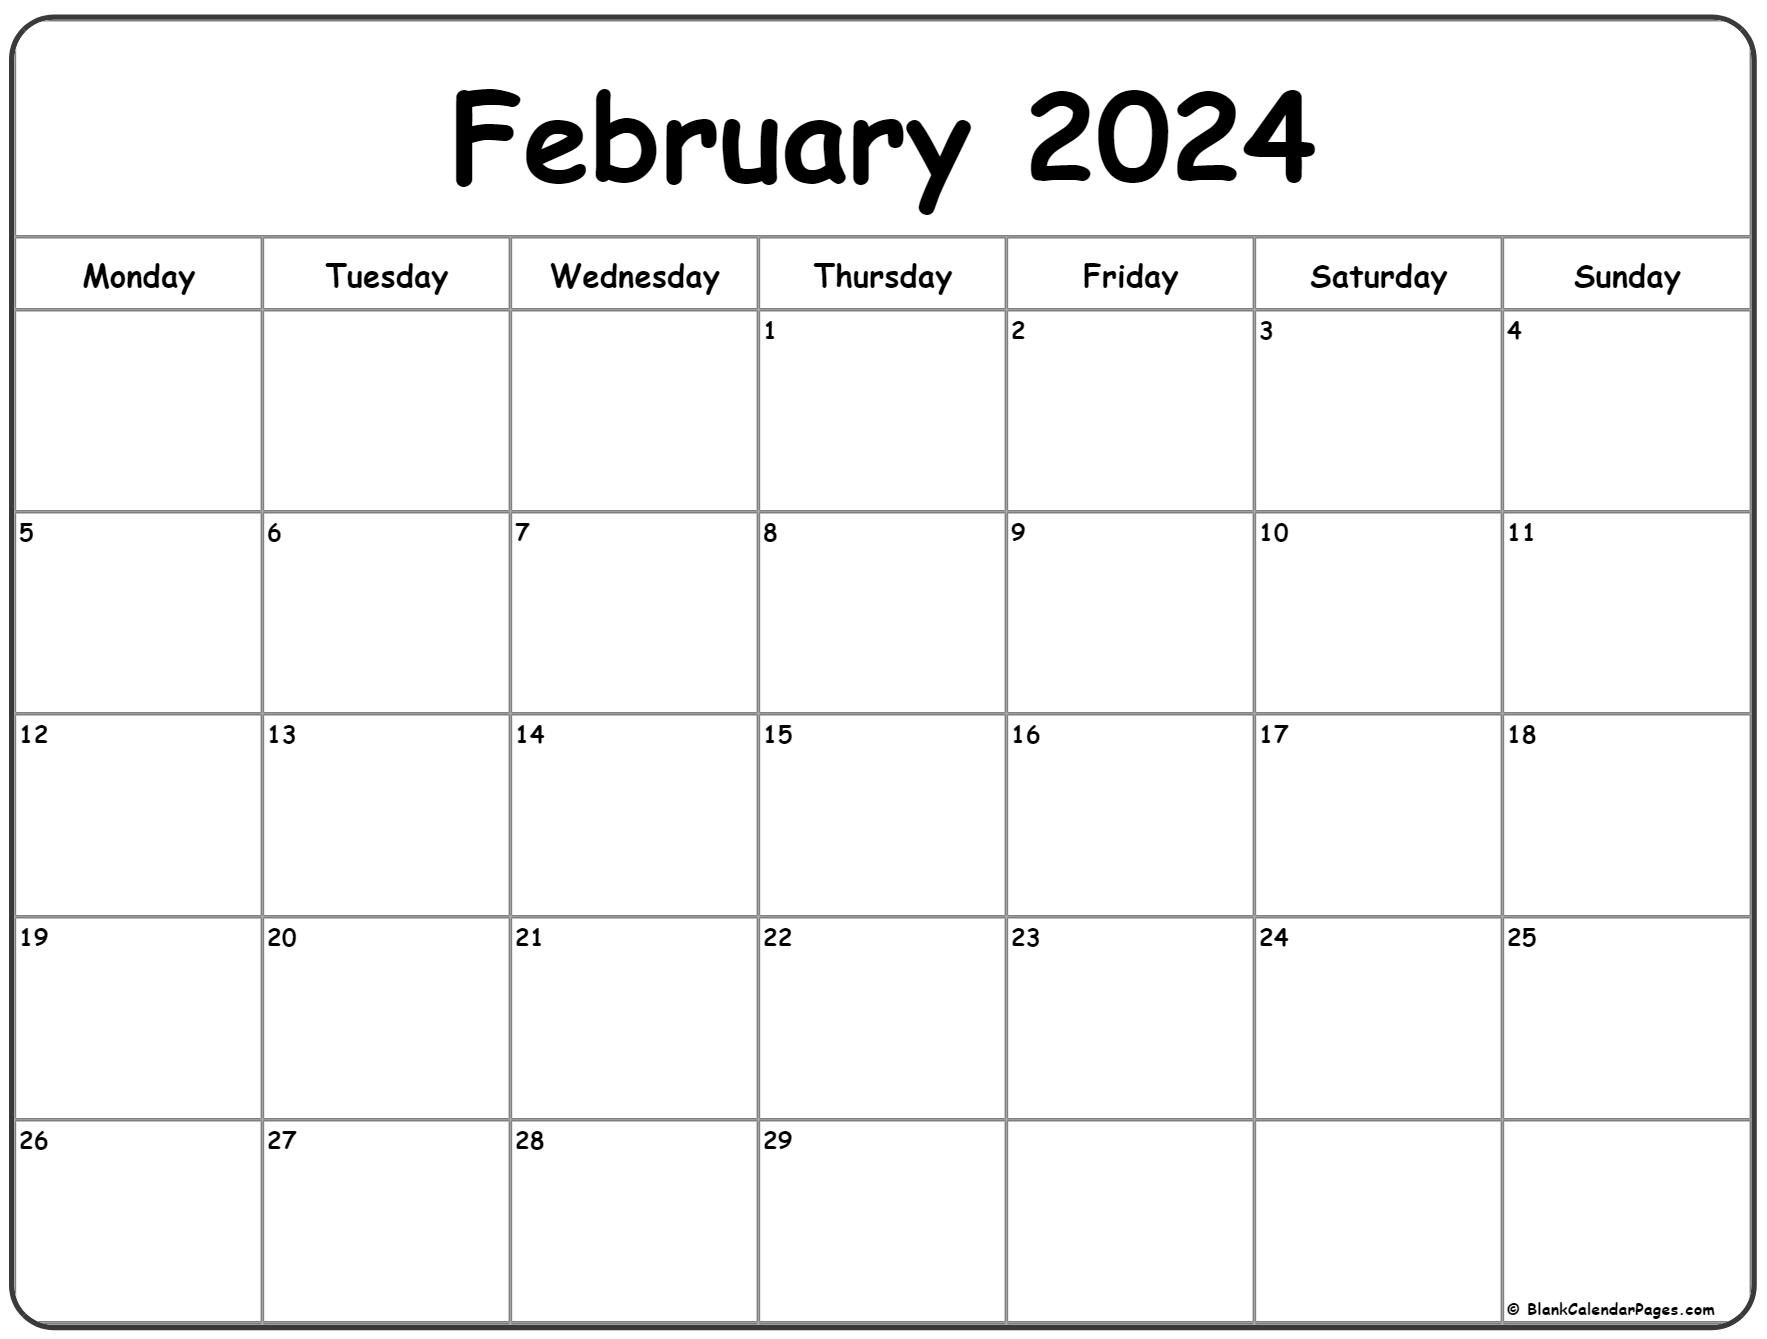 Feburary 2022 Calendar February 2022 Monday Calendar | Monday To Sunday